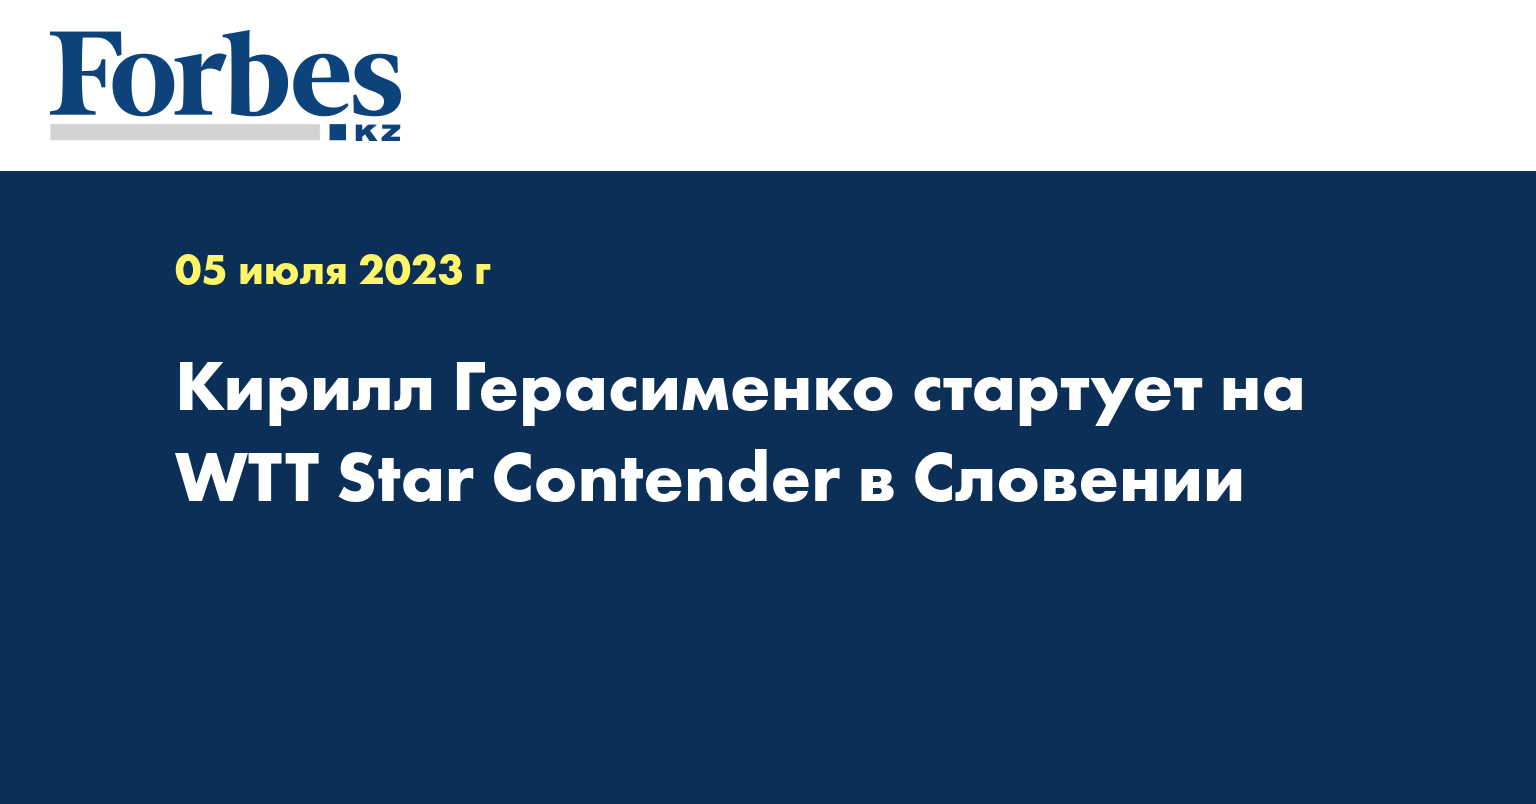 Кирилл Герасименко стартует на WTT Star Contender в Словении